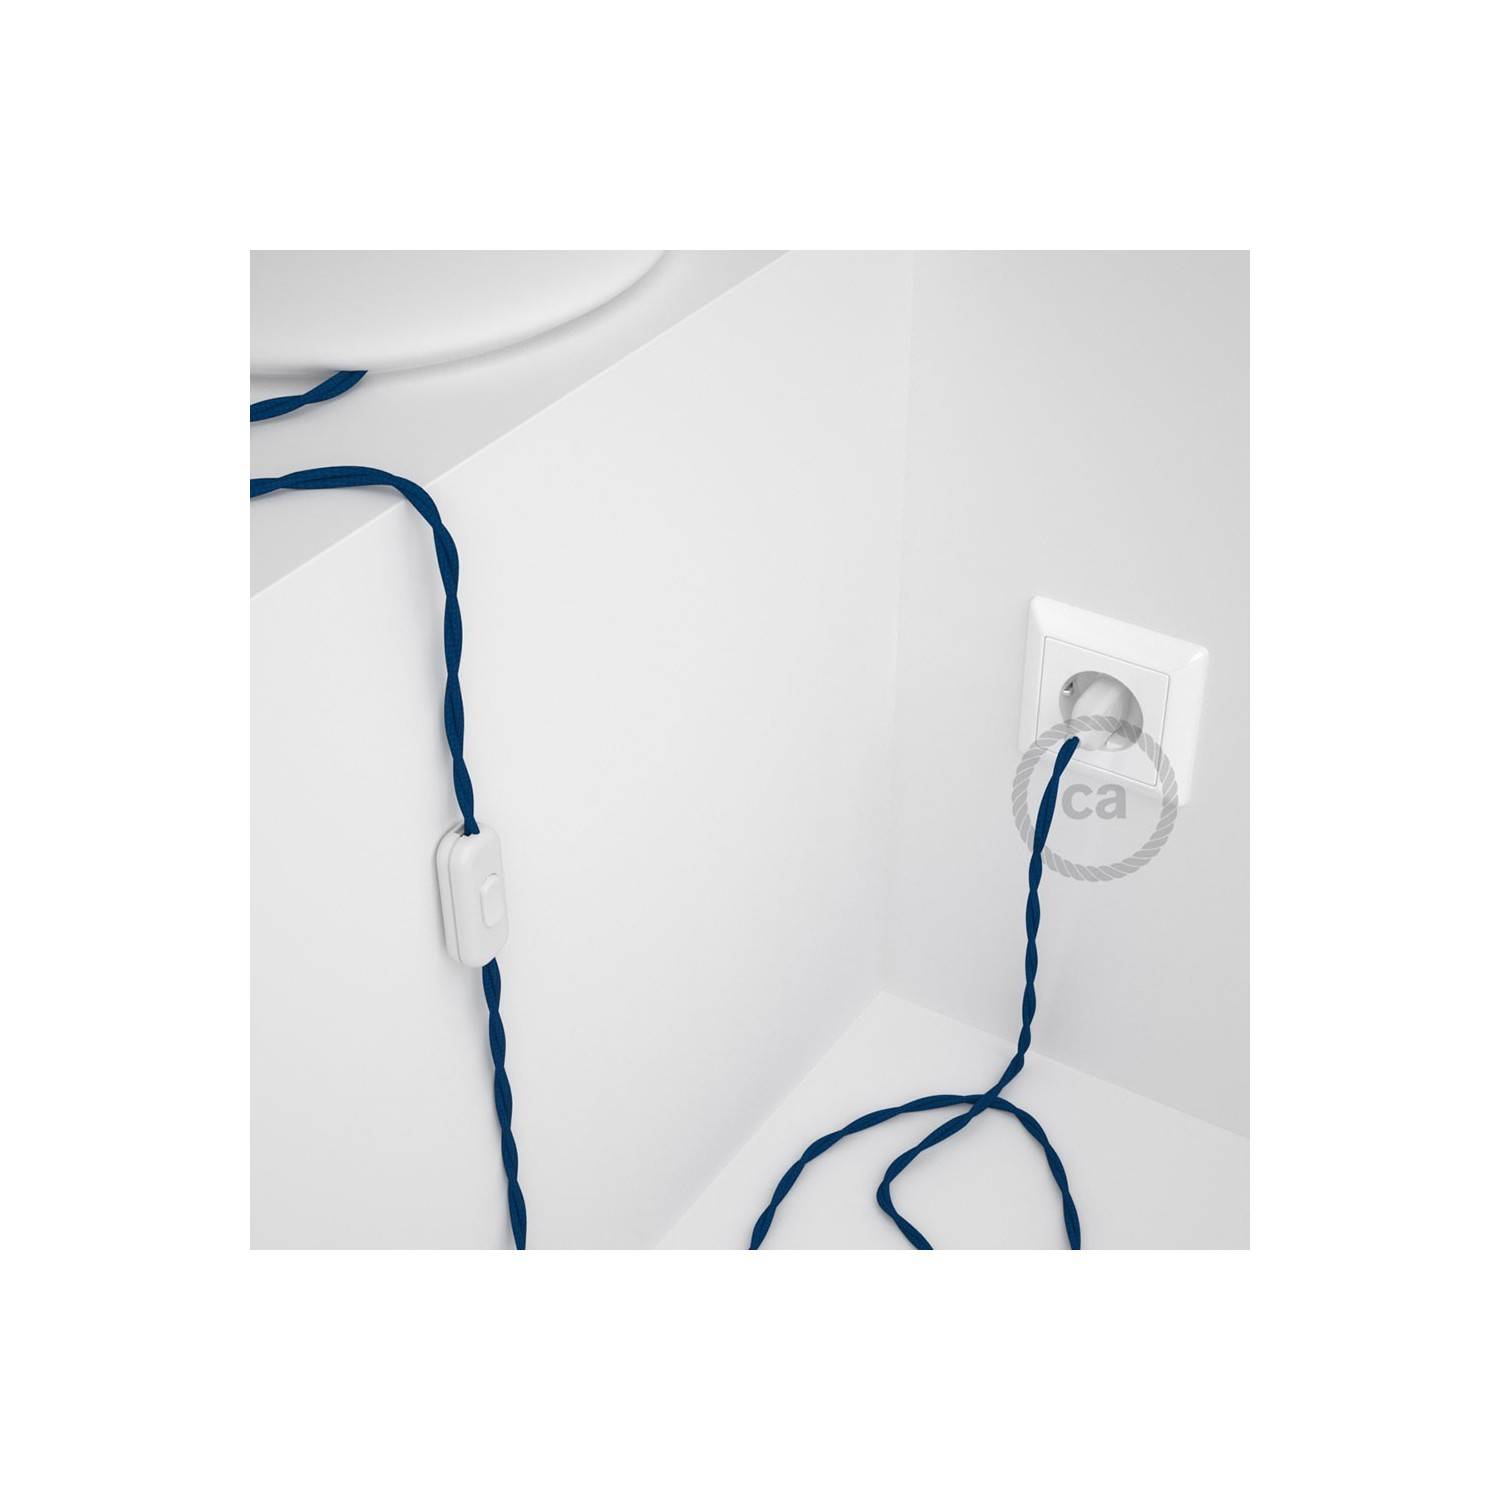 Cableado para lámpara, cable TM12 Efecto Seda Azul 1,8m. Elige tu el color de la clavija y del interruptor!